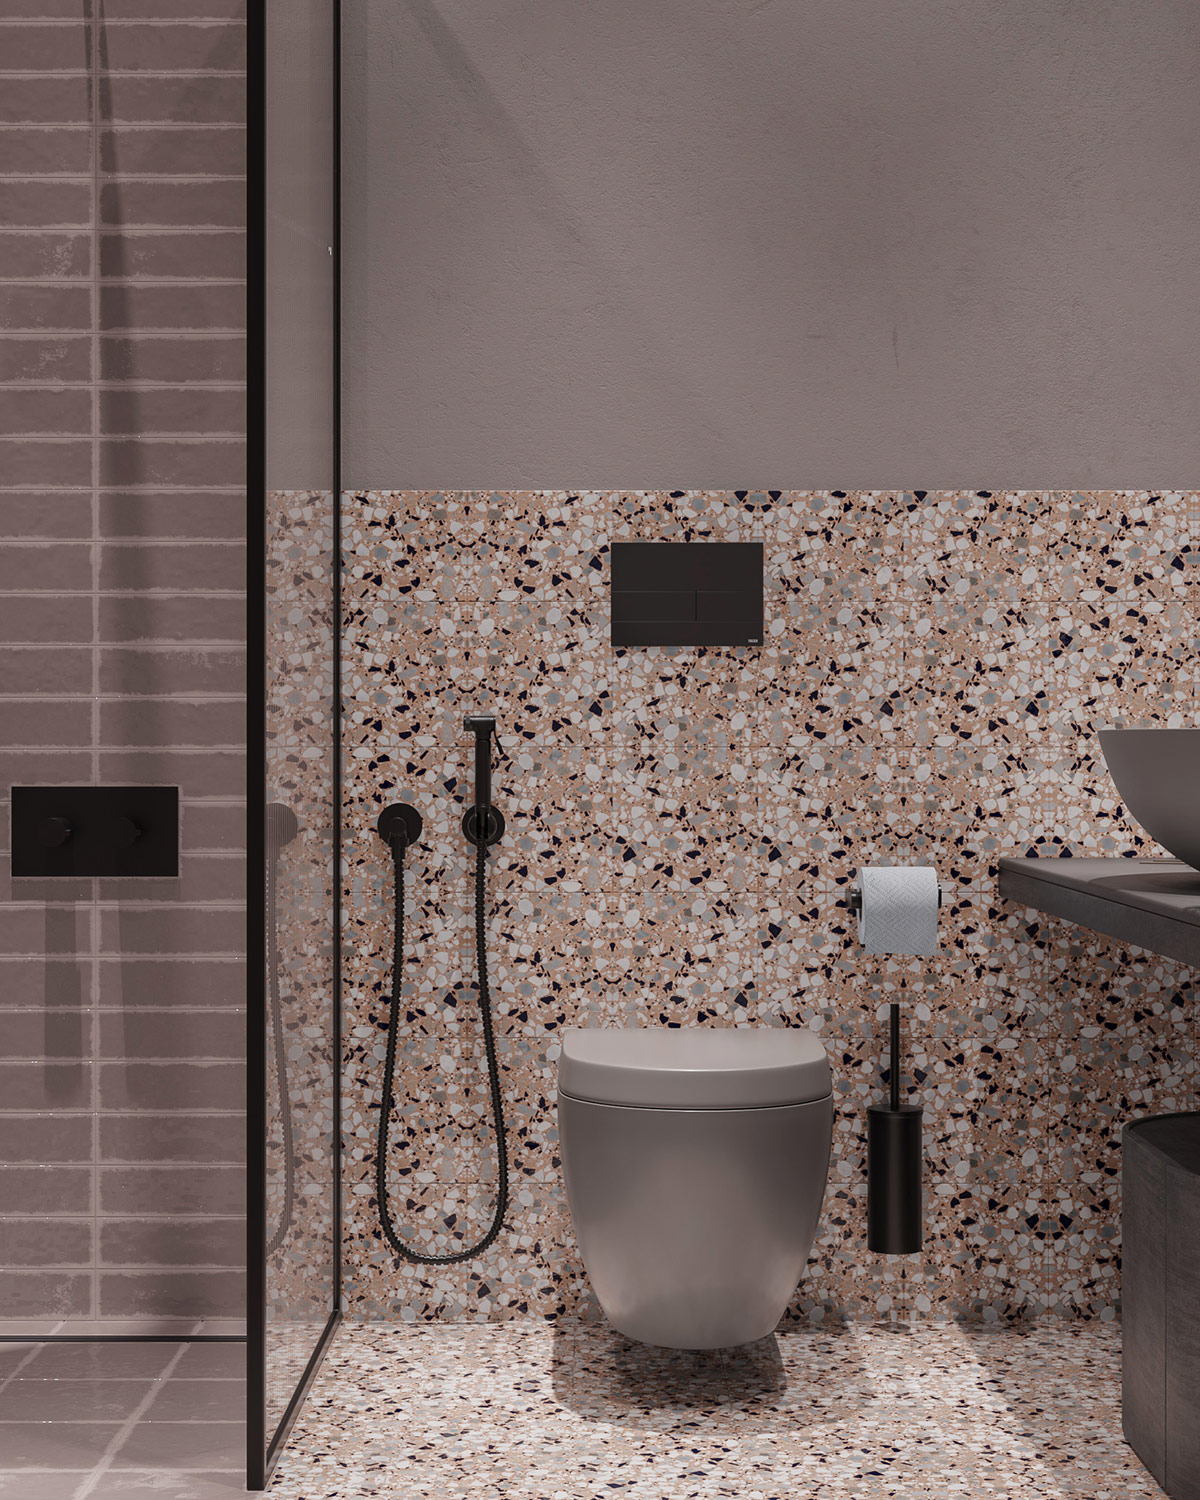 Nửa trên của phòng tắm được sơn màu xám trơn để cân bằng với những viên gạch màu sắc ở nửa tường dưới và sàn nhà.